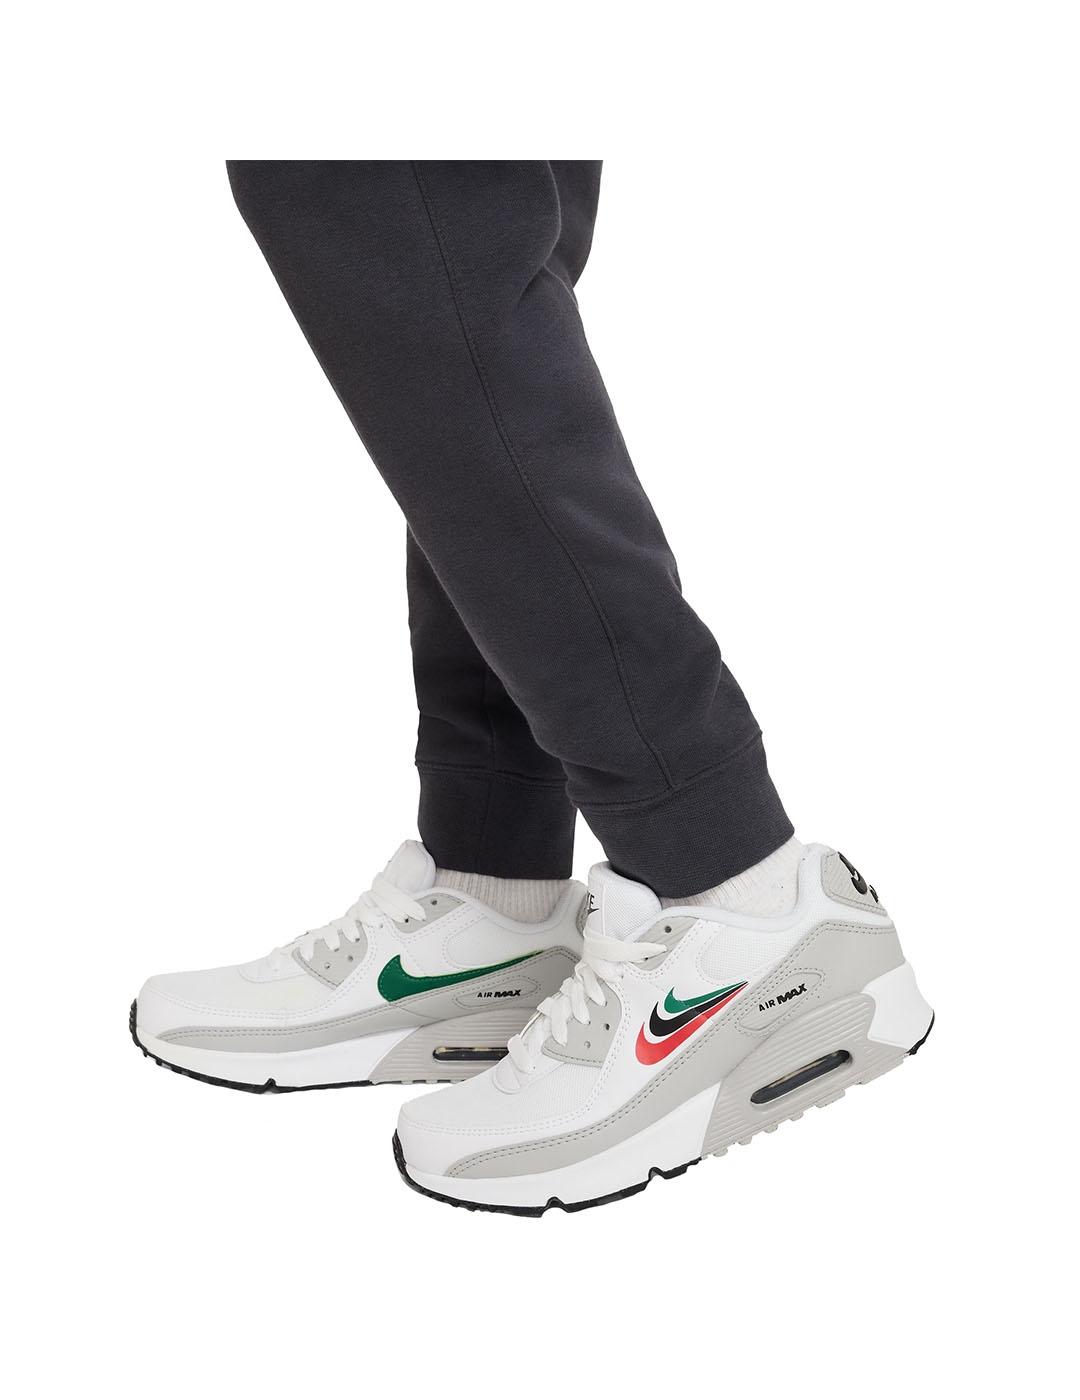 Pantalon Niño Nike Nsw Flc Cargo Negro